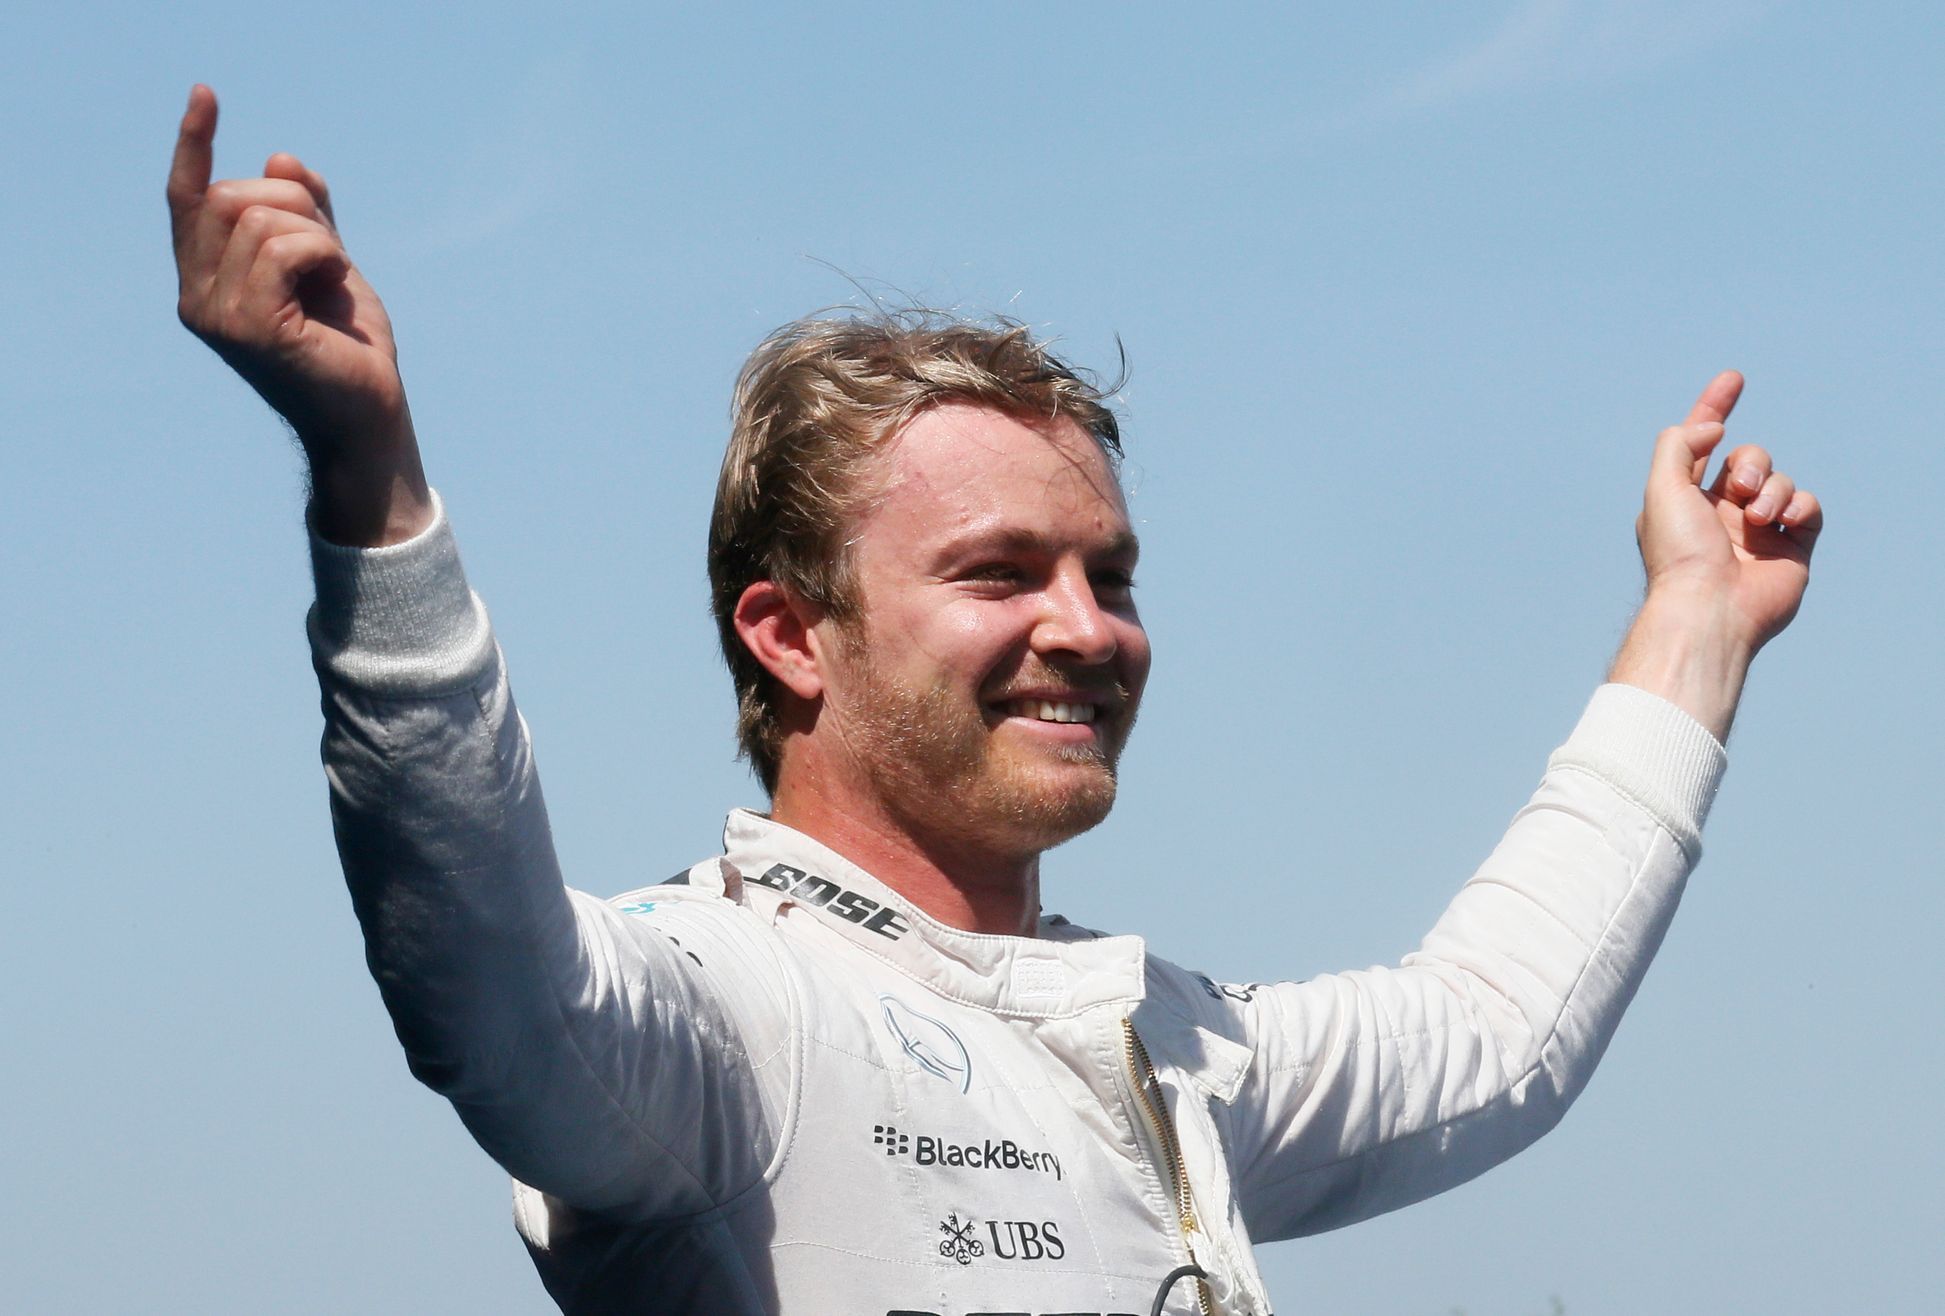 F1, VC Španělska 2015: Nico Rosberg, Mercedes